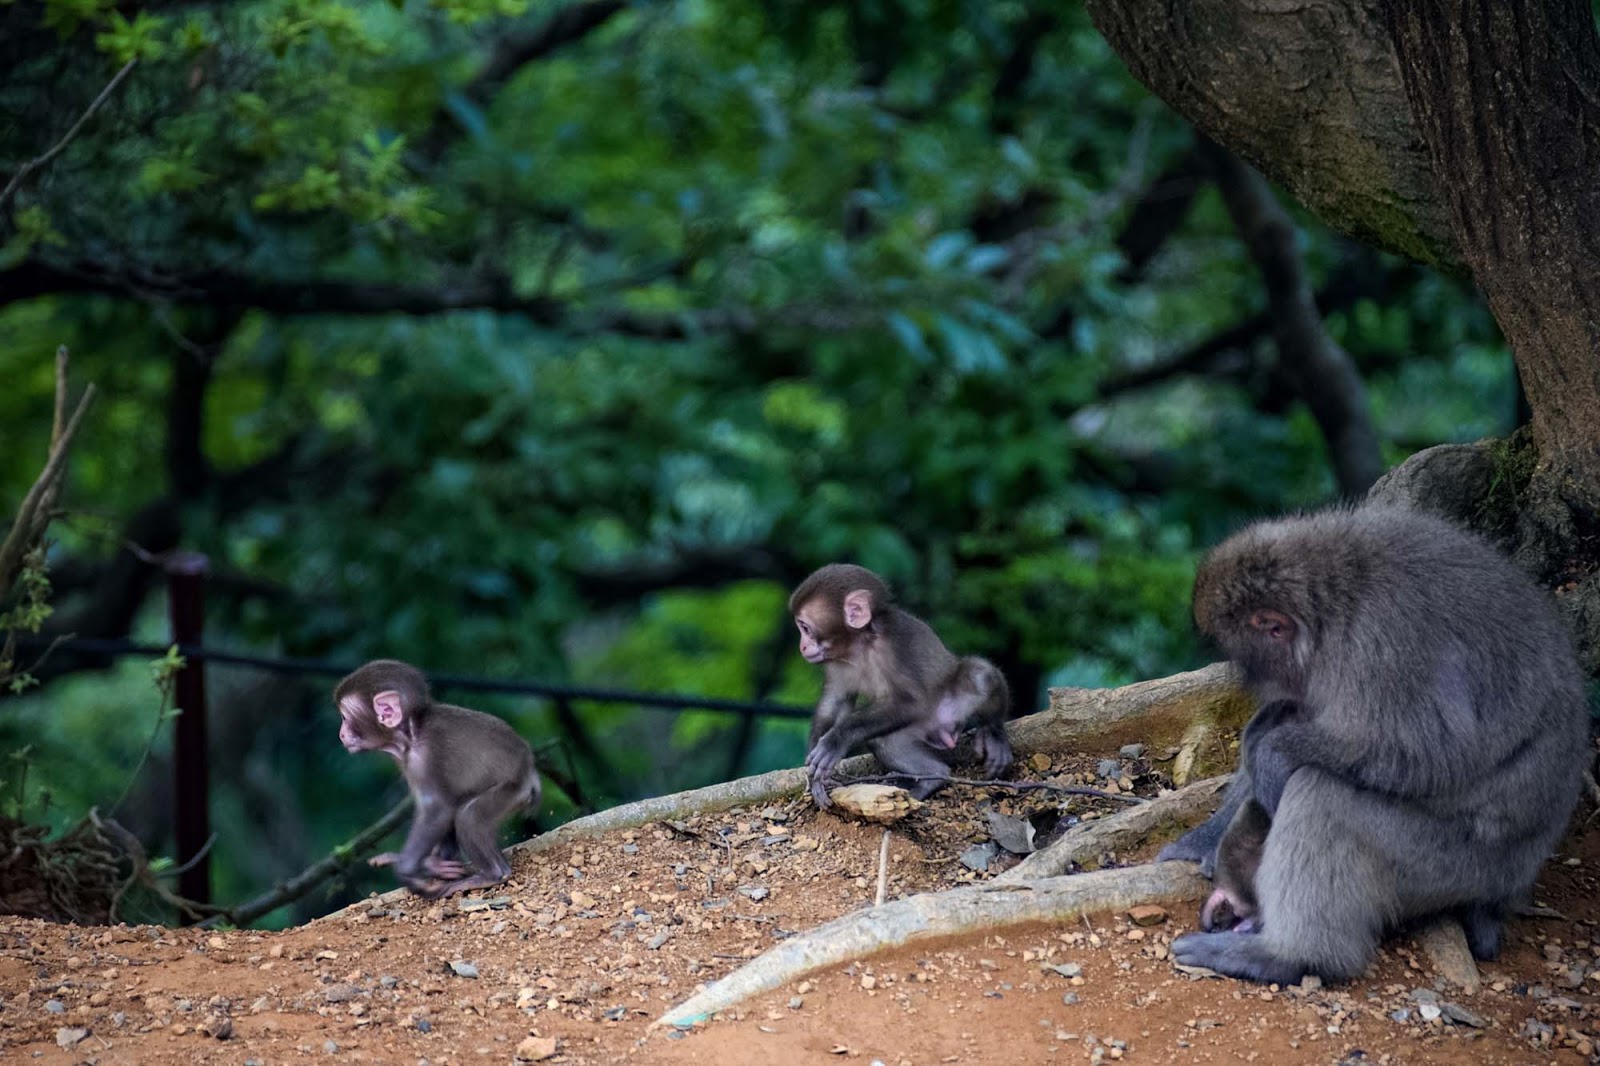 iwatayama monkey park